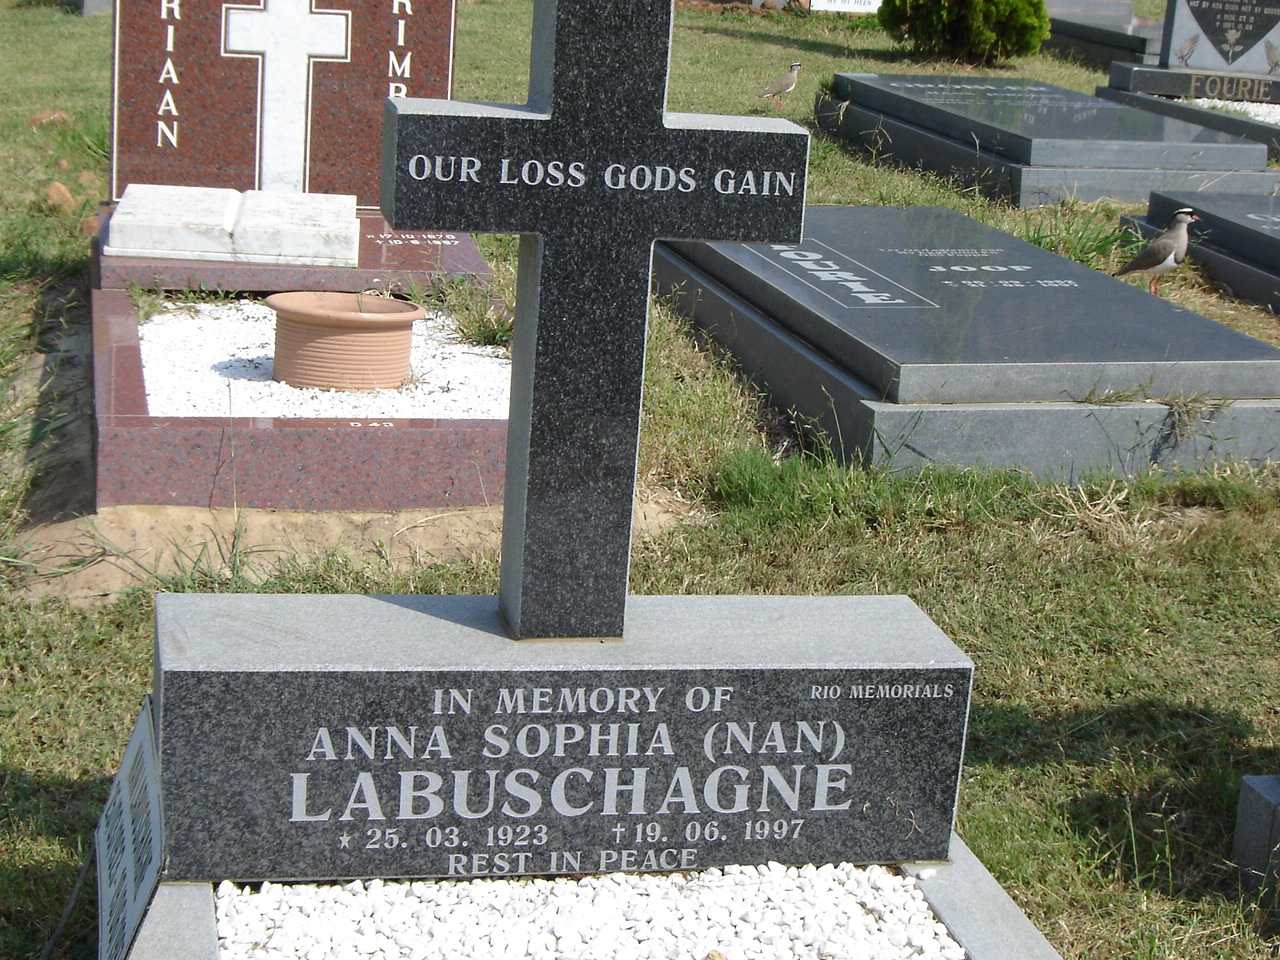 LABUSCHAGNE Anna Sophia 1923-1997